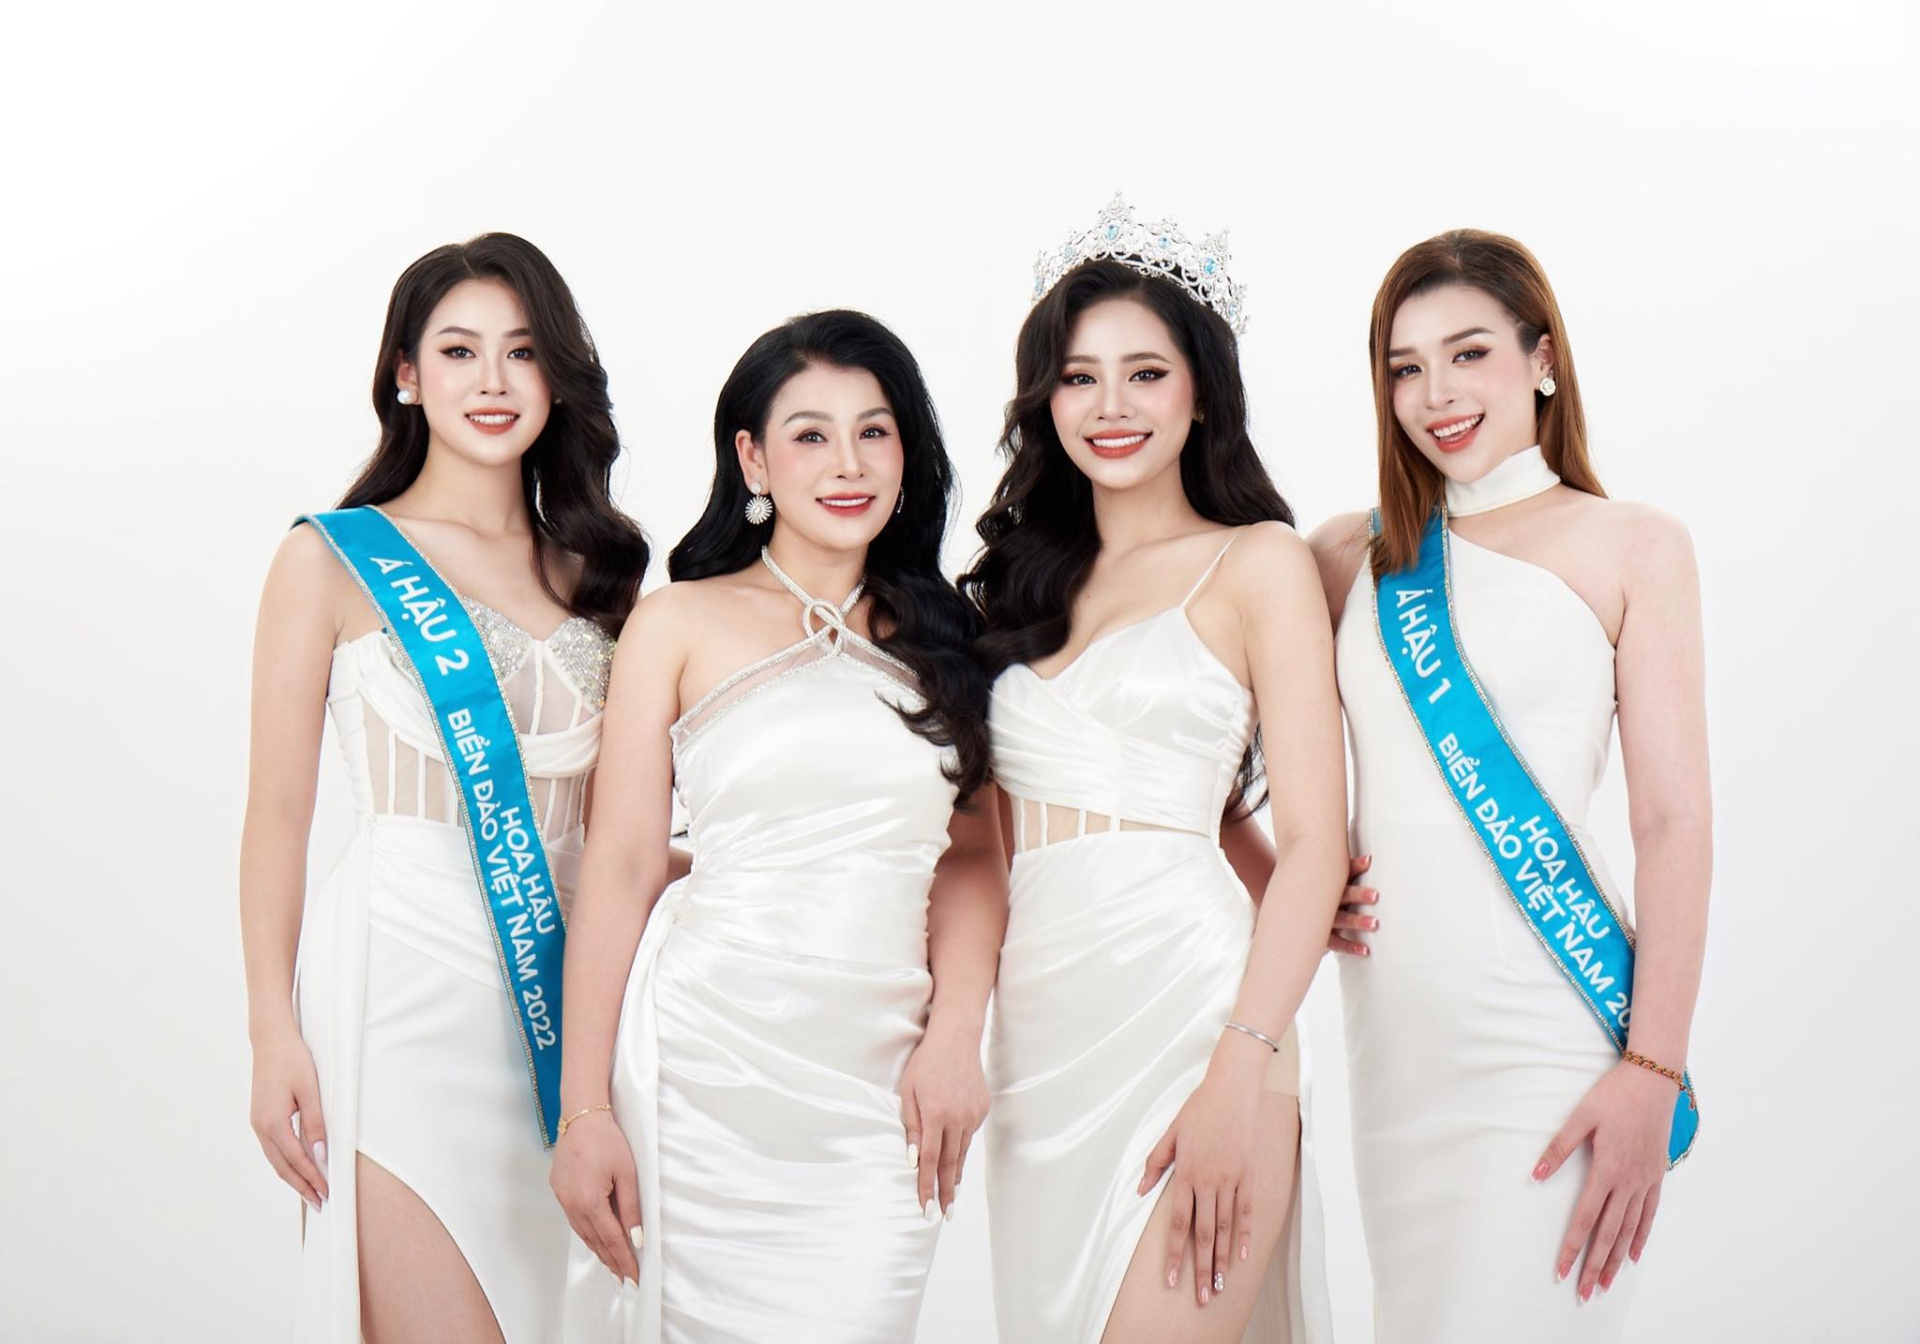 Cuộc sống của Hoa hậu duy nhất tại Việt Nam trả lại vương miện 4 tỷ đồng hiện ra sao? - ảnh 1